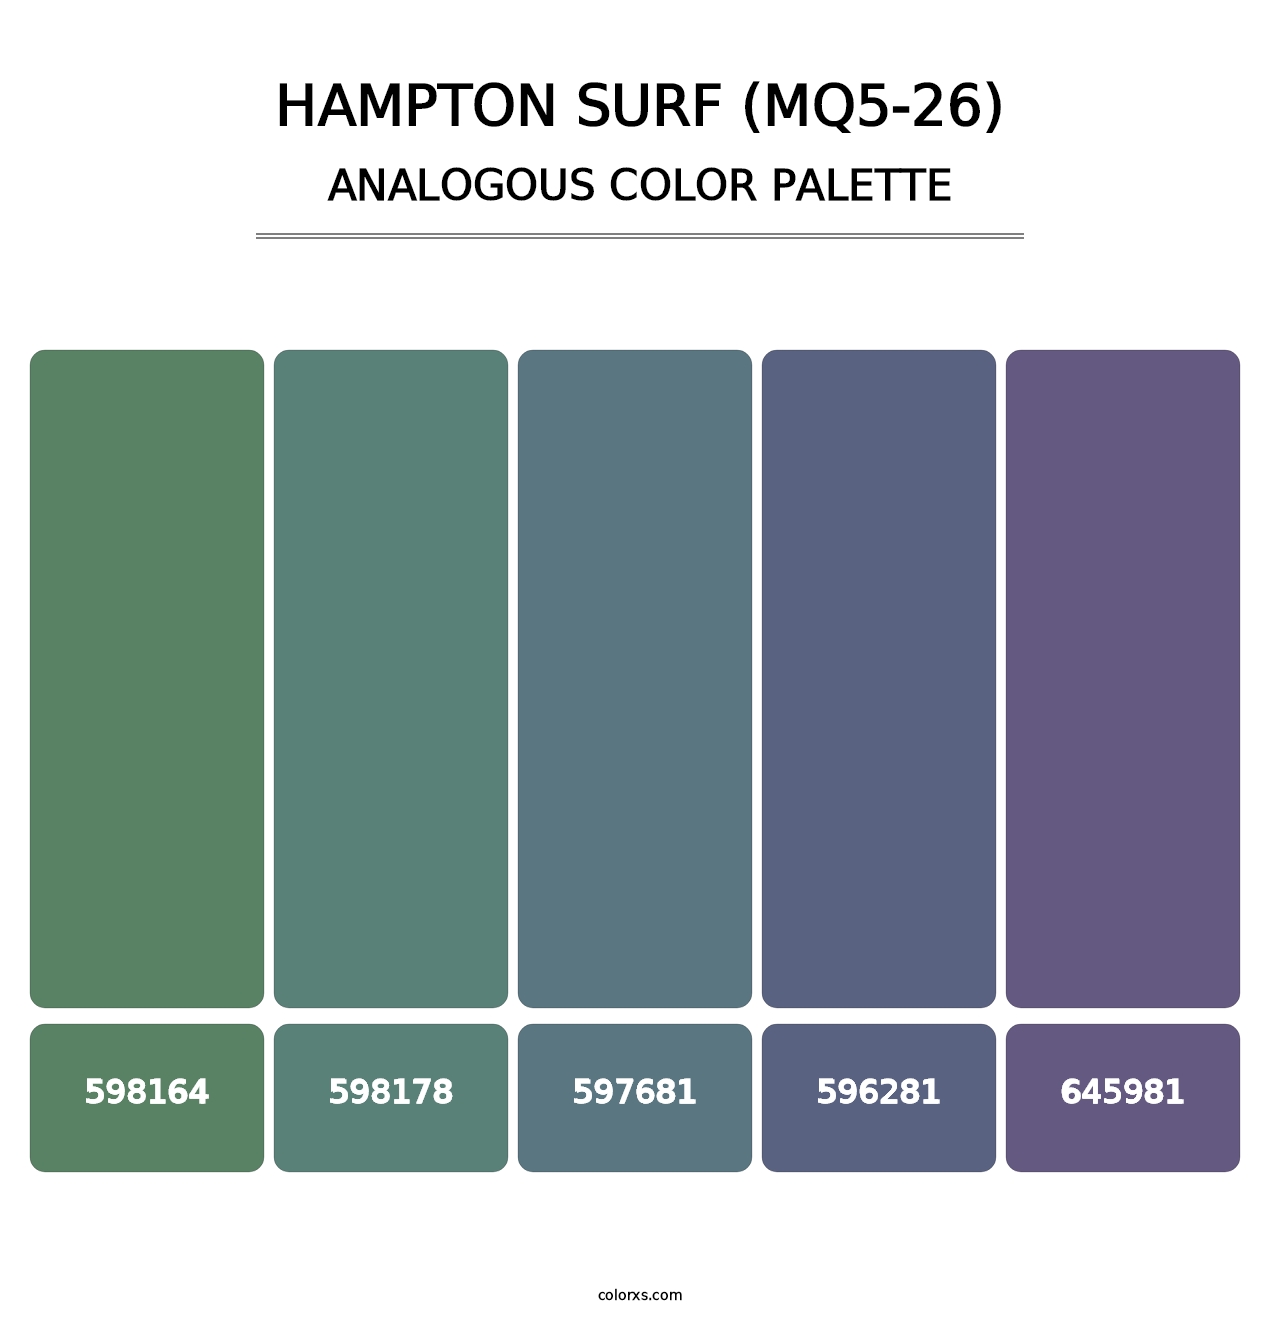 Hampton Surf (MQ5-26) - Analogous Color Palette